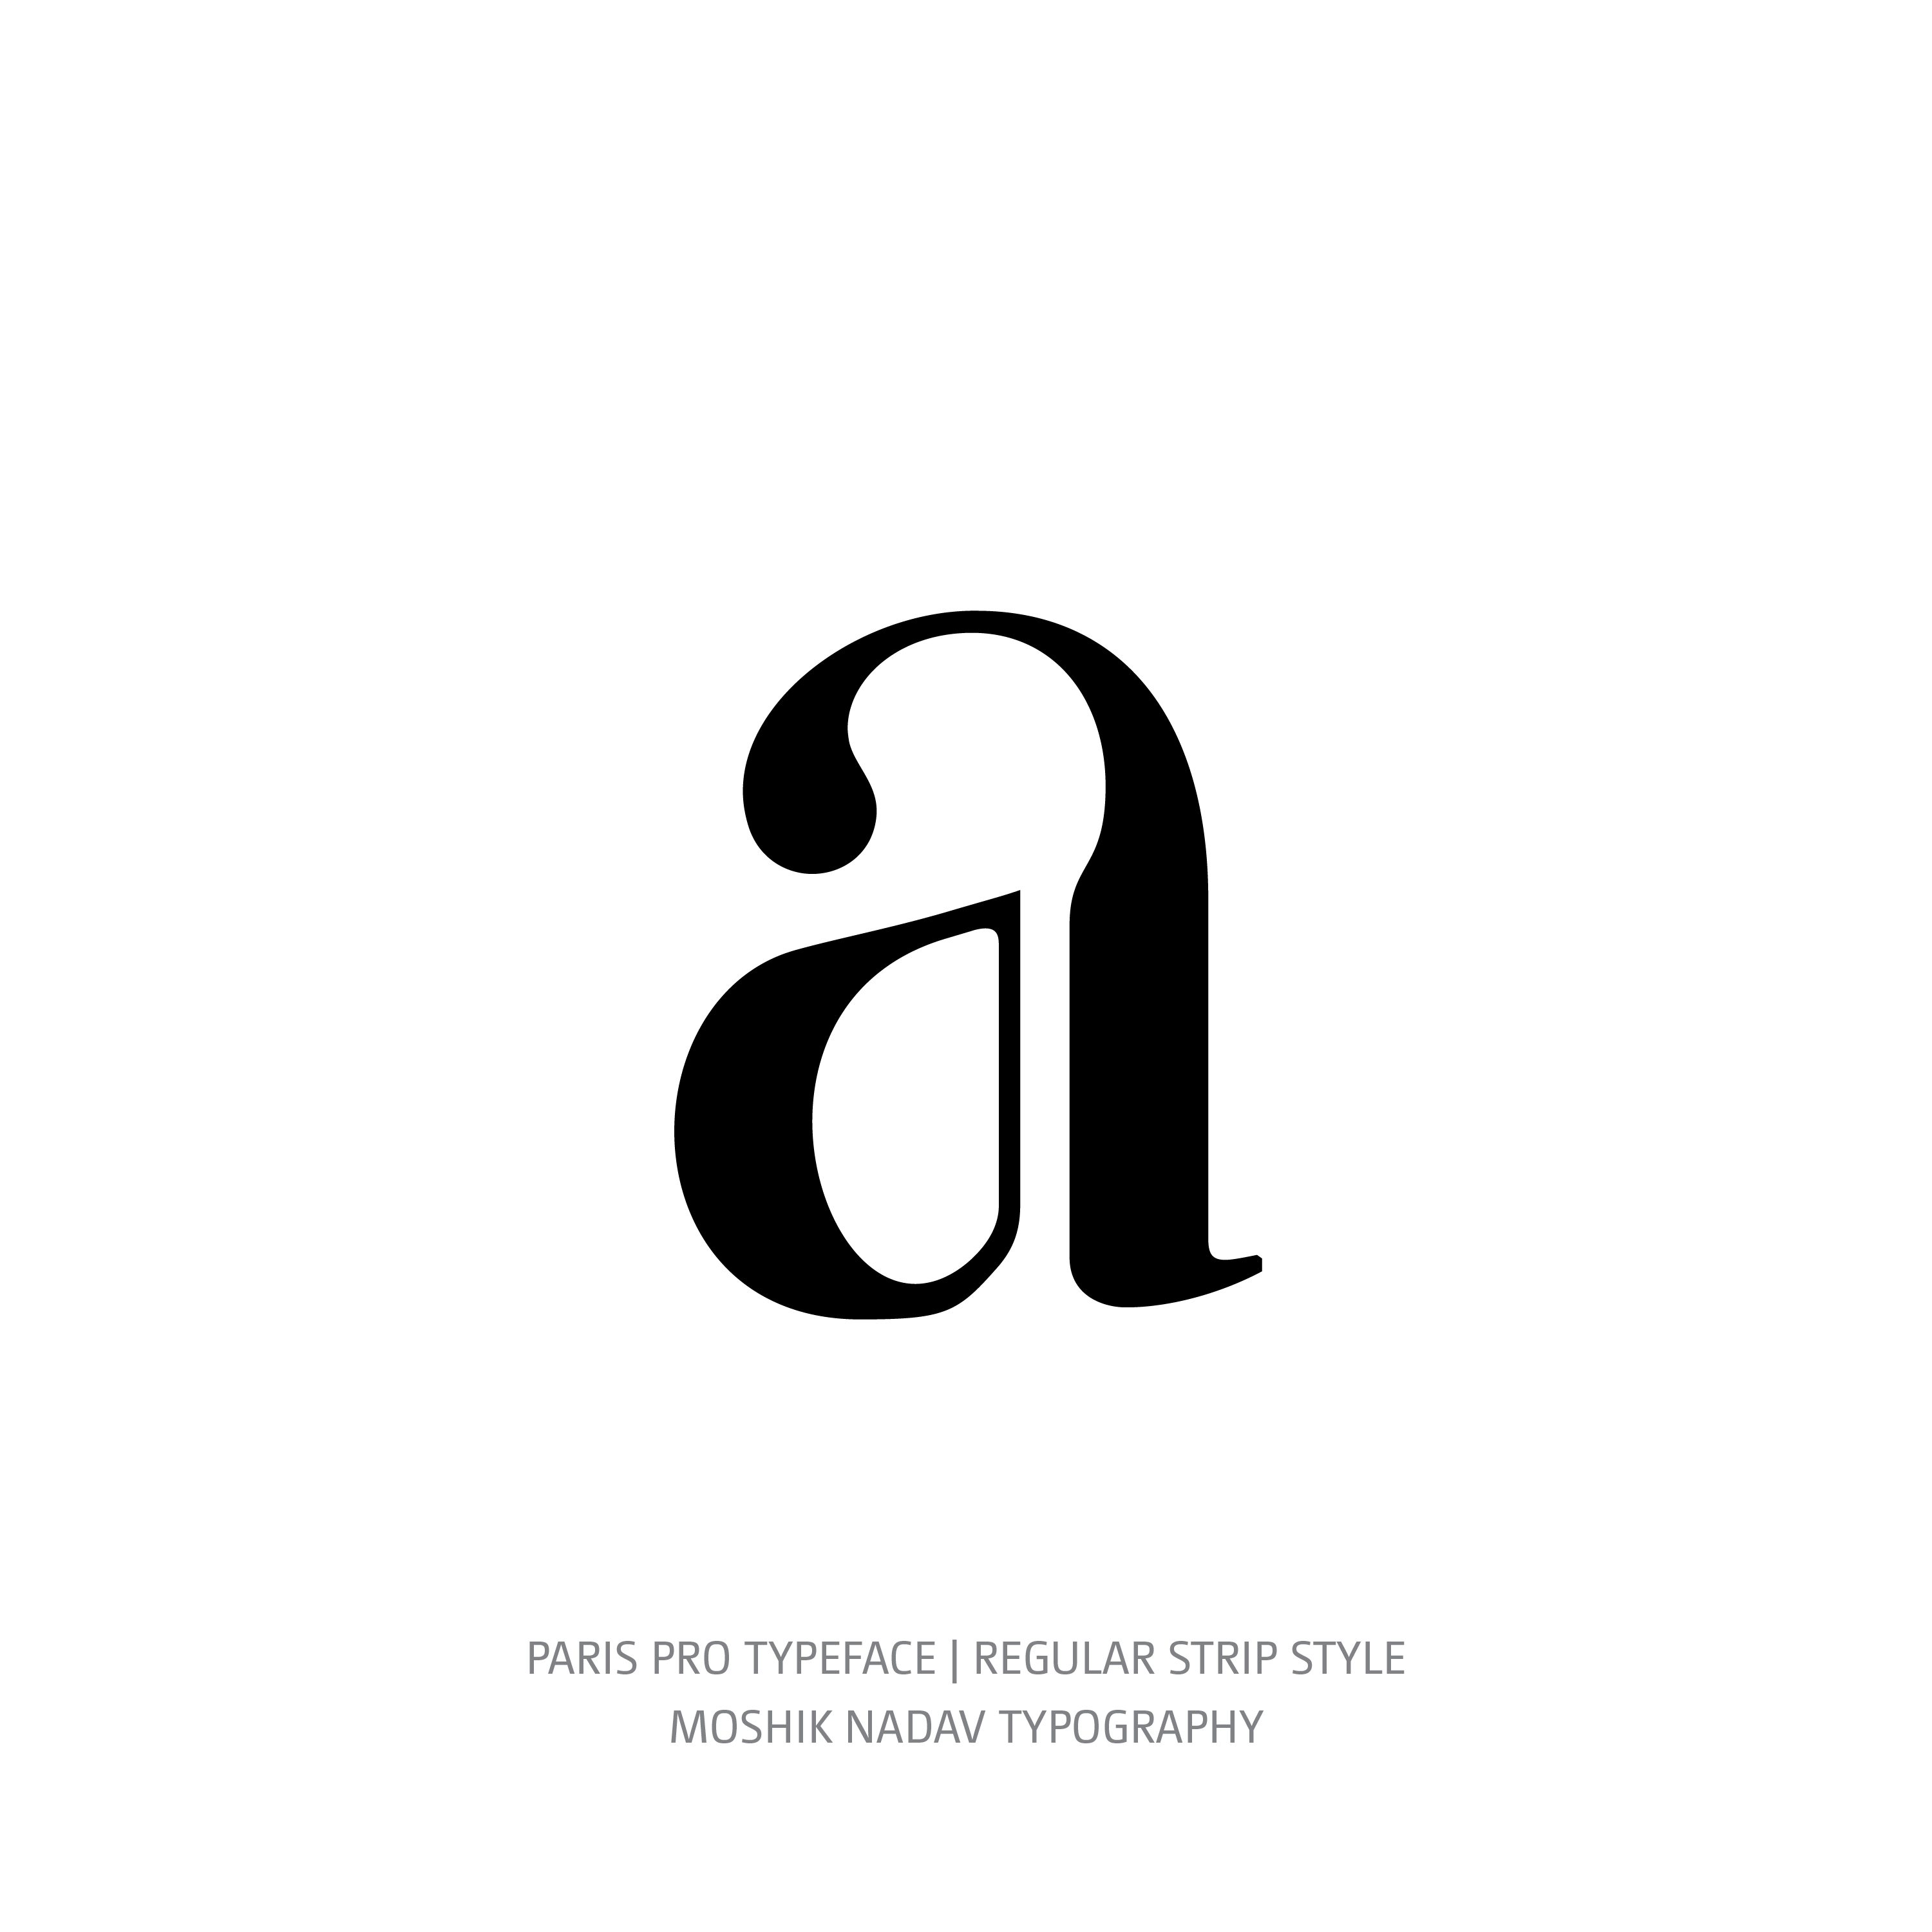 Paris Pro Typeface Regular Strip a